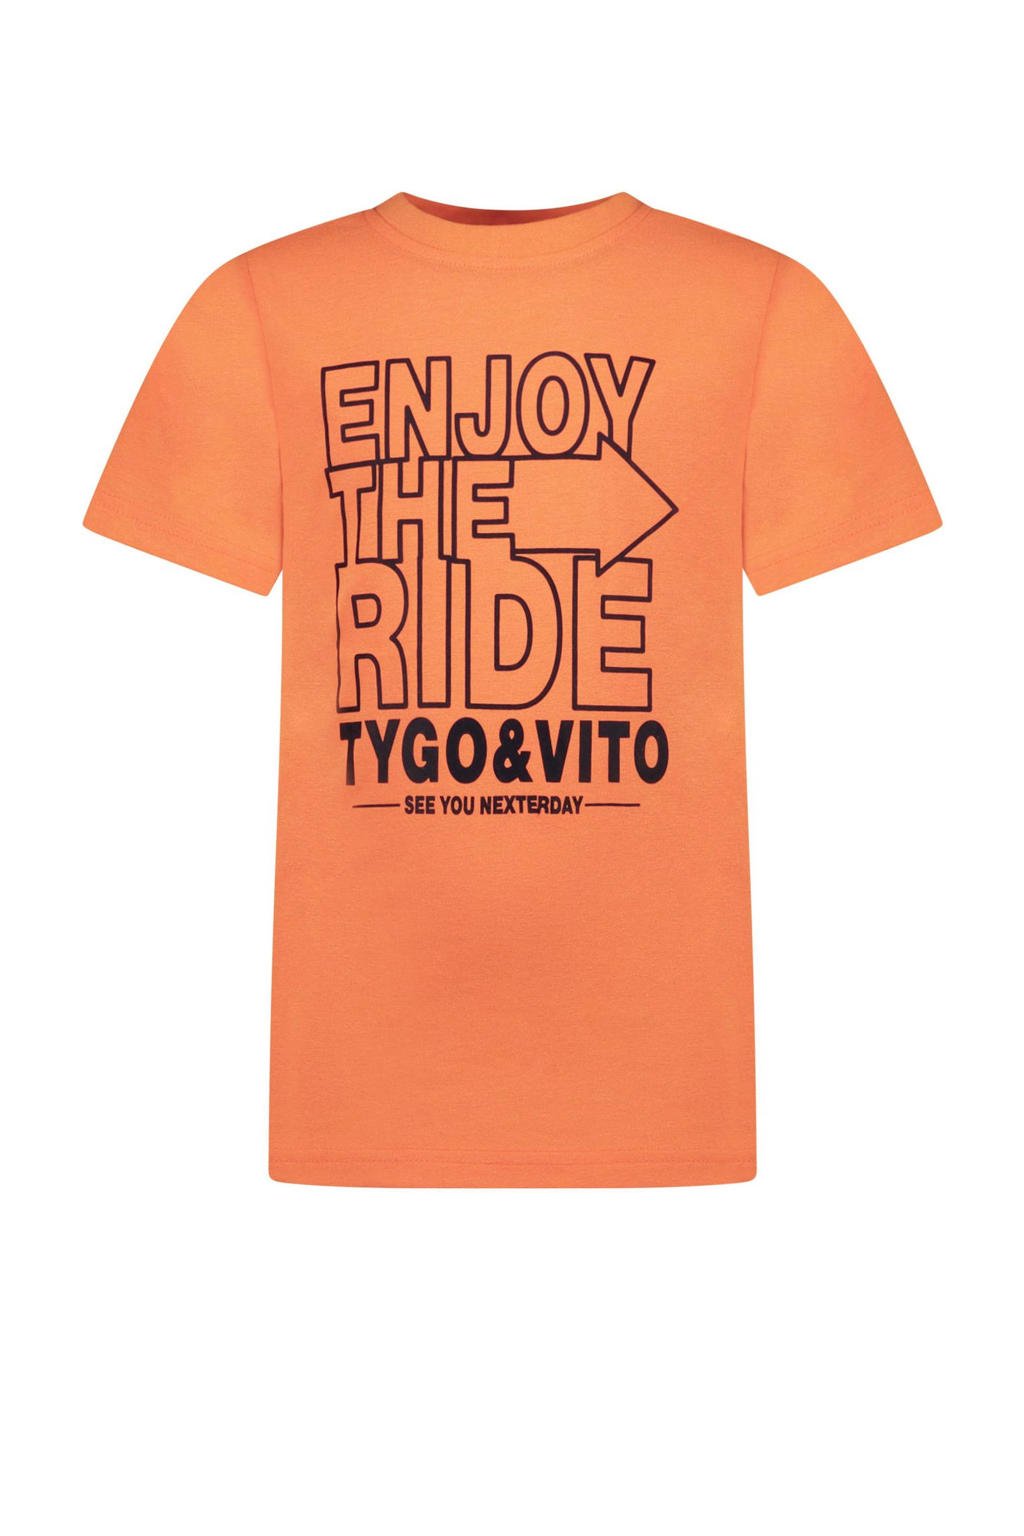 Oranje jongens TYGO & vito T-shirt van duurzaam stretchkatoen met korte mouwen en ronde hals